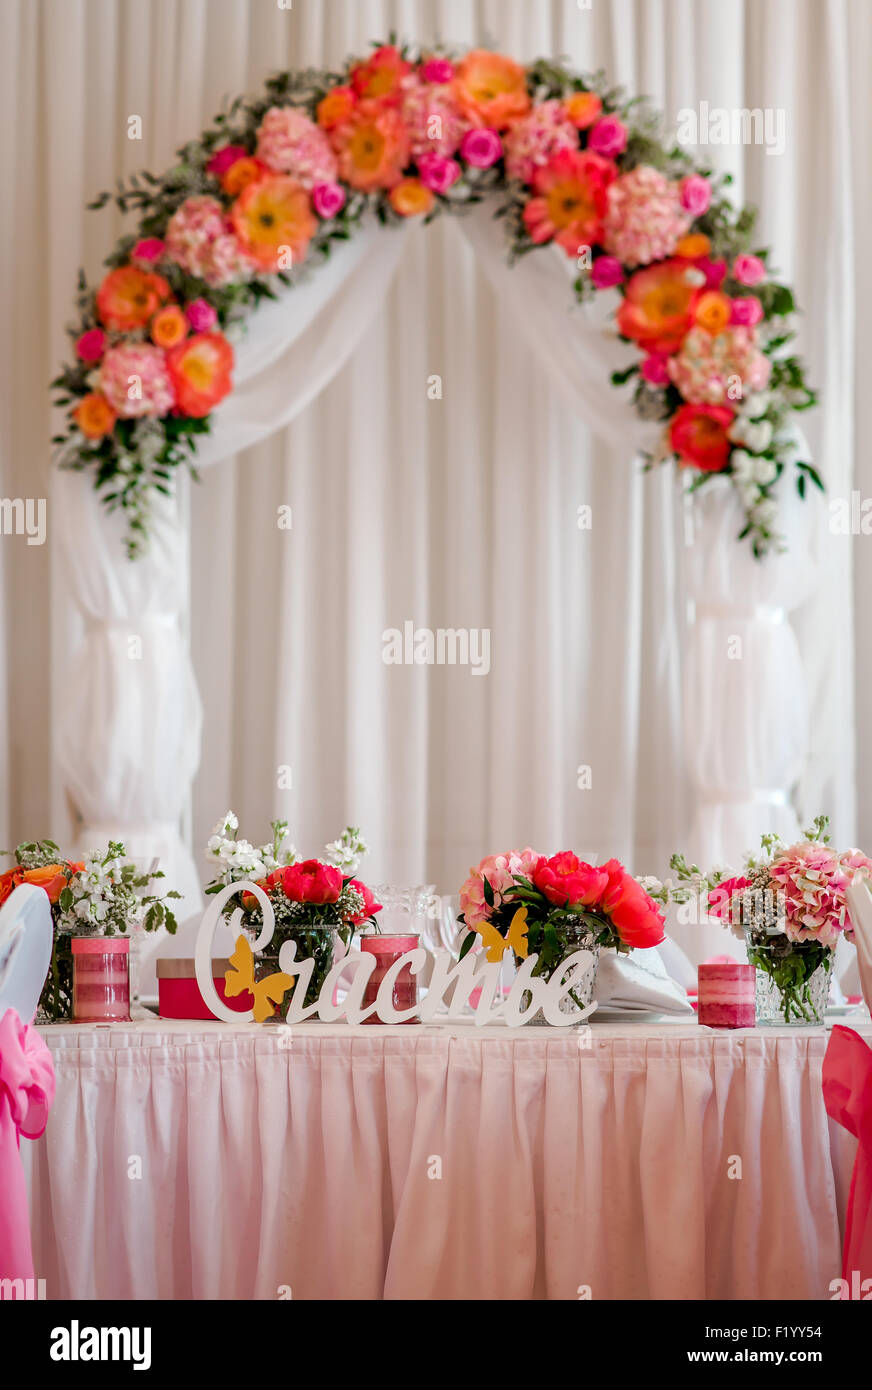 Decoraciones de boda fotografías e imágenes de alta resolución - Alamy